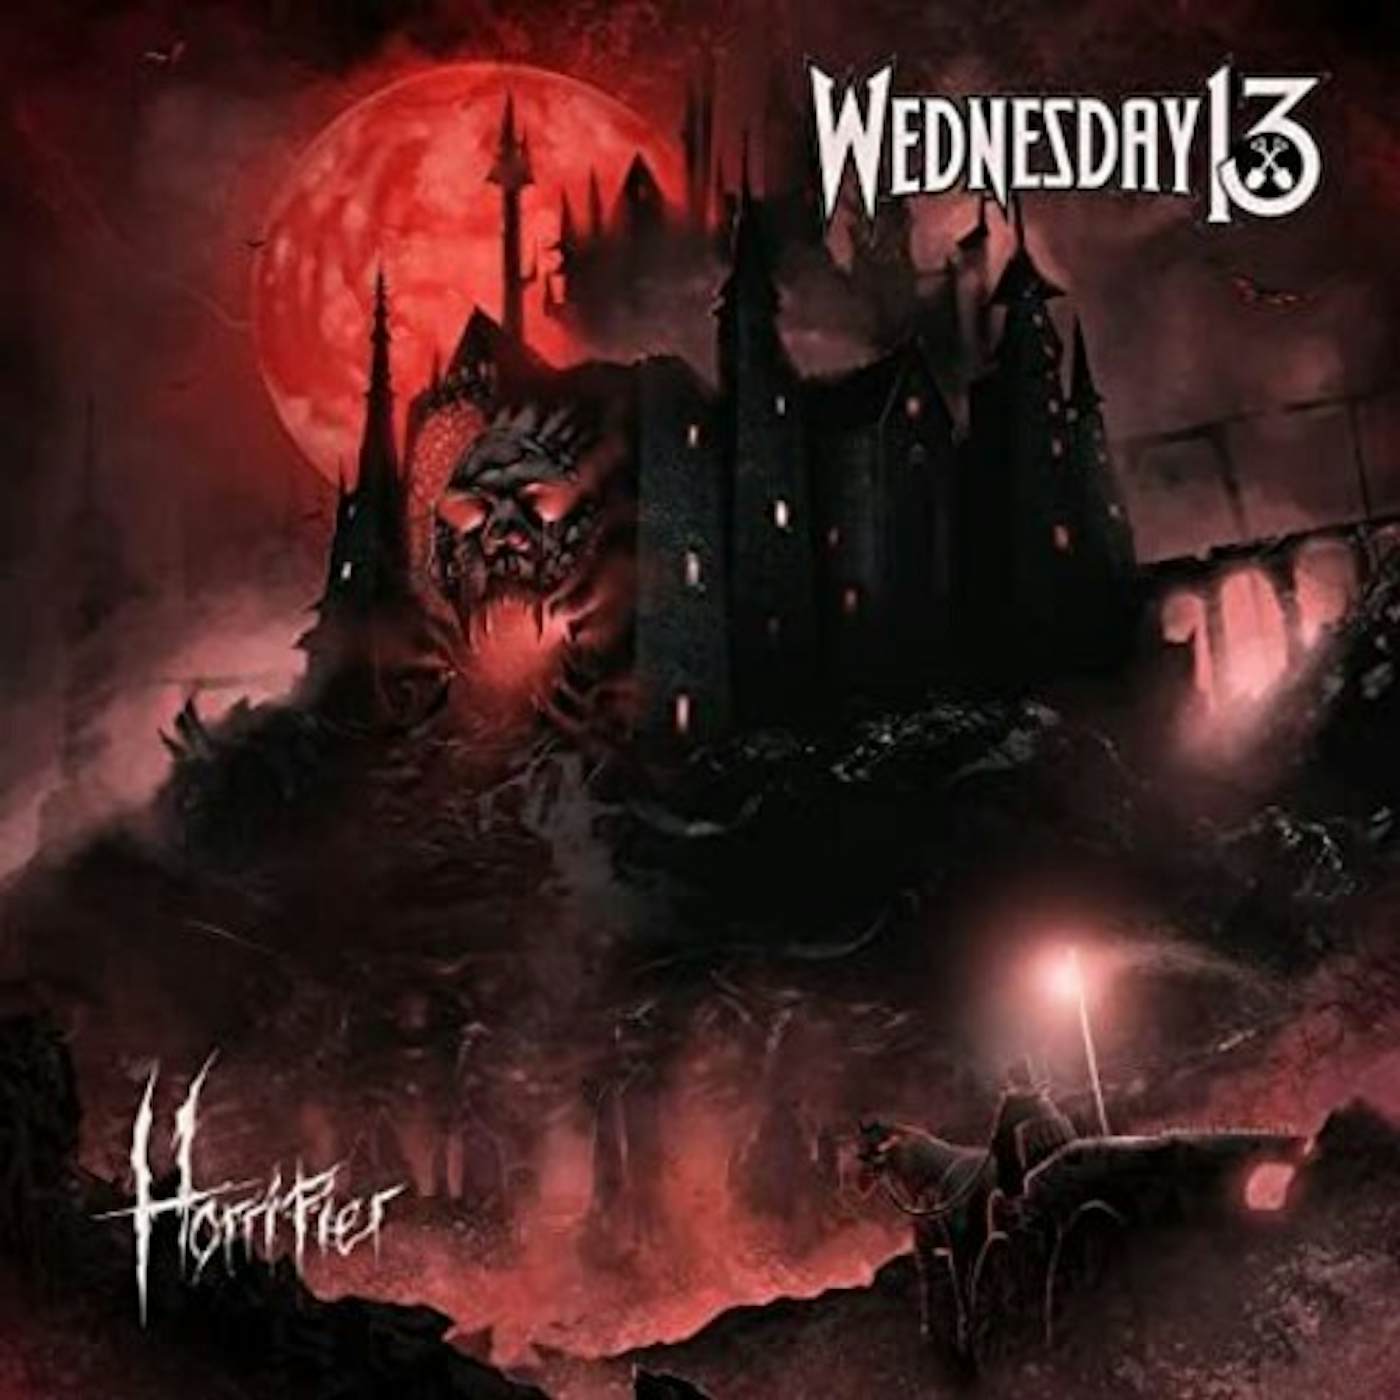 Wednesday 13 Horrifier vinyl record